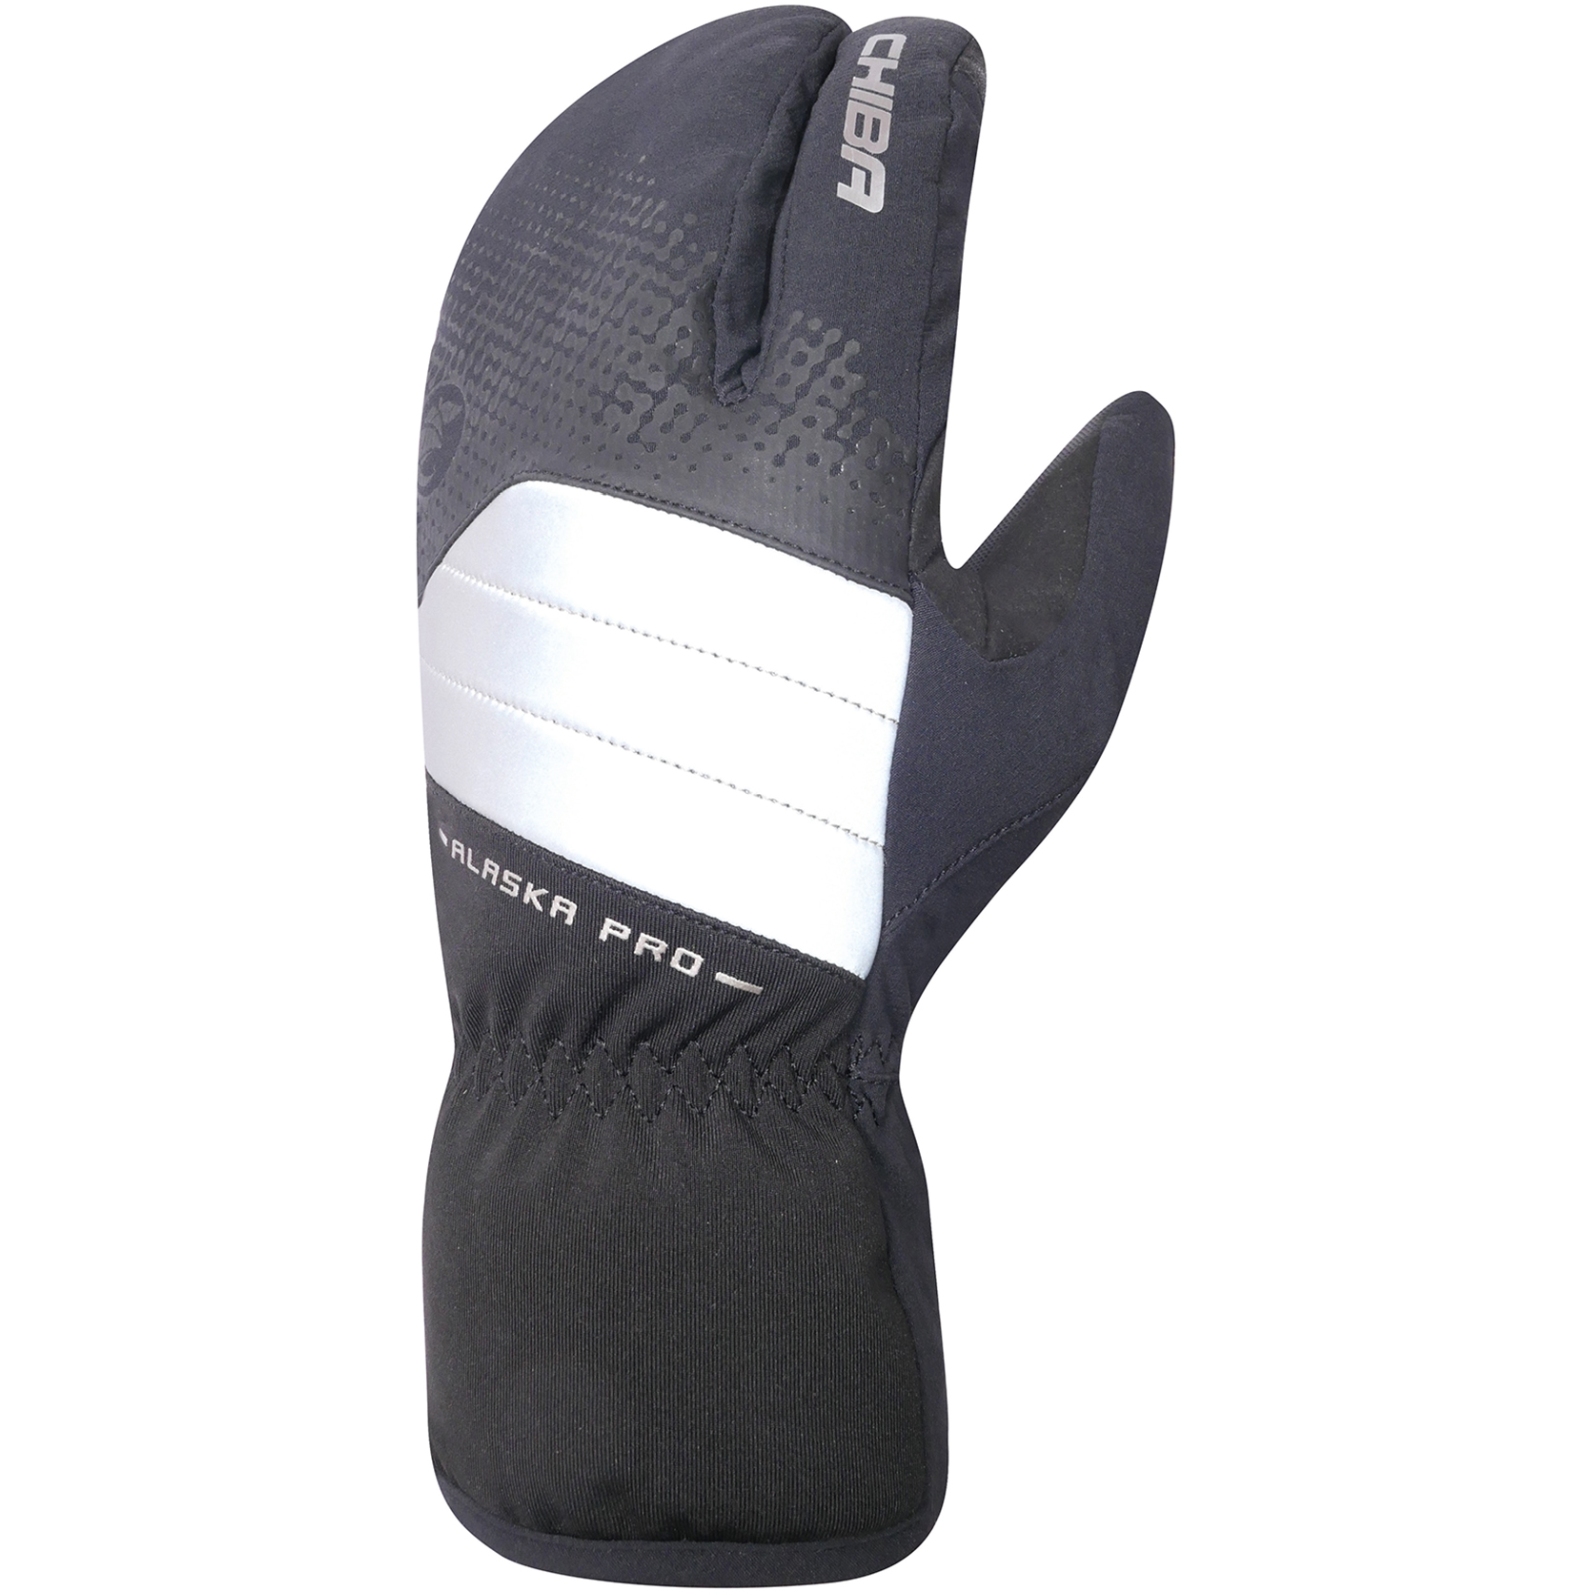 Productfoto van Chiba Alaska Pro Extra Warm Fietshandschoenen - zwart